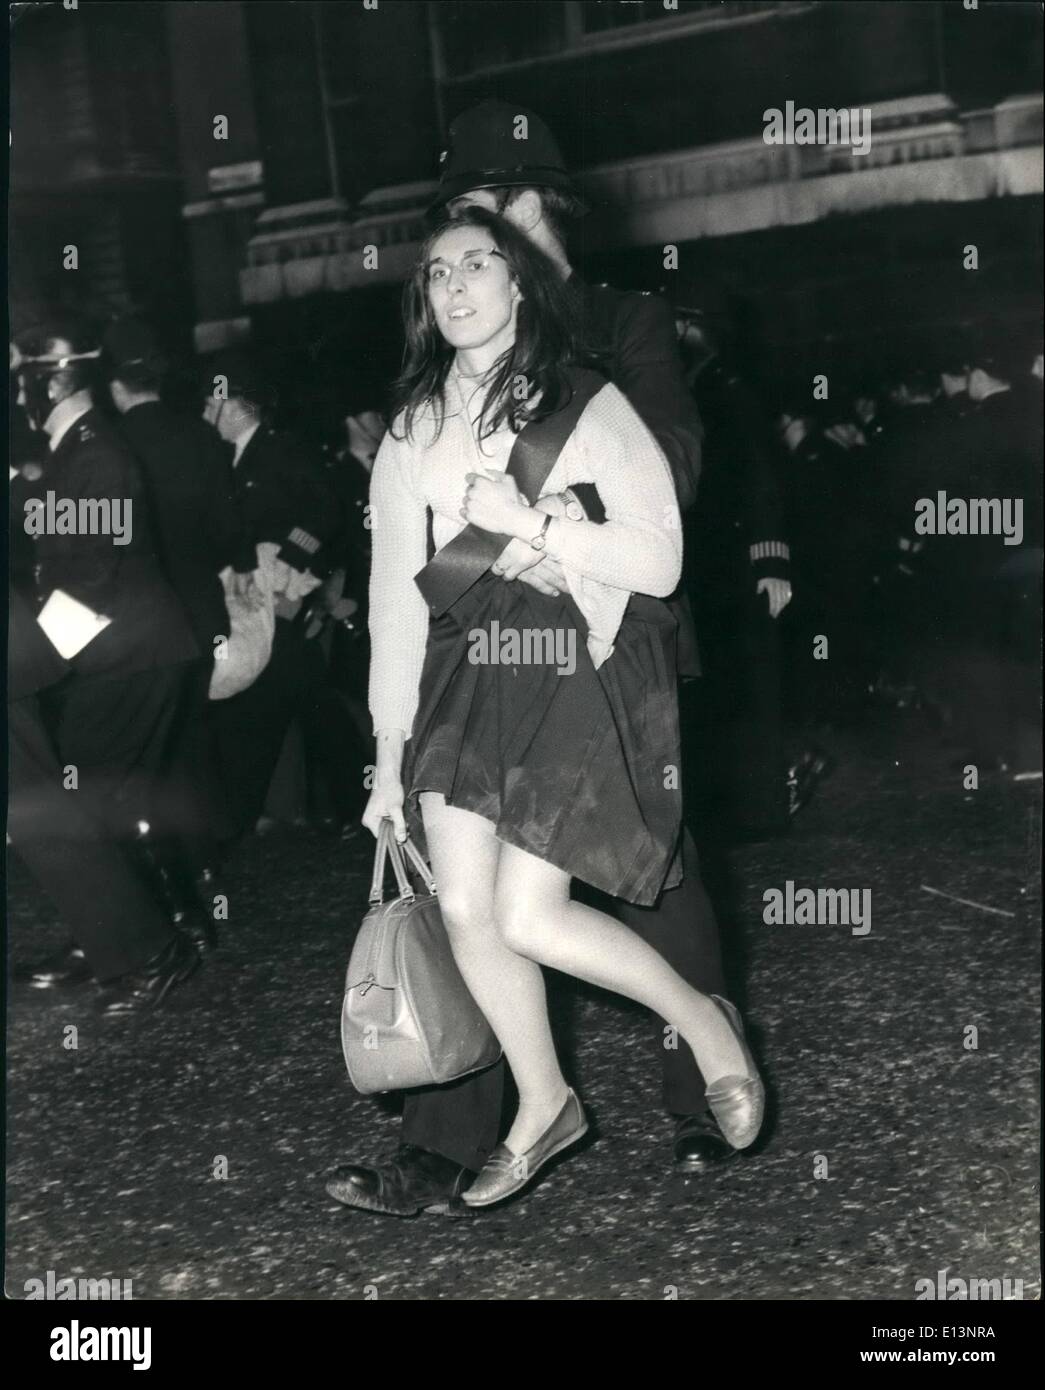 Mar. 22, 2012 - La photo montre la jeune fille démonstrateur est considérée être emportés au cours de la lutte à Trafalgar Square ce soir. Banque D'Images